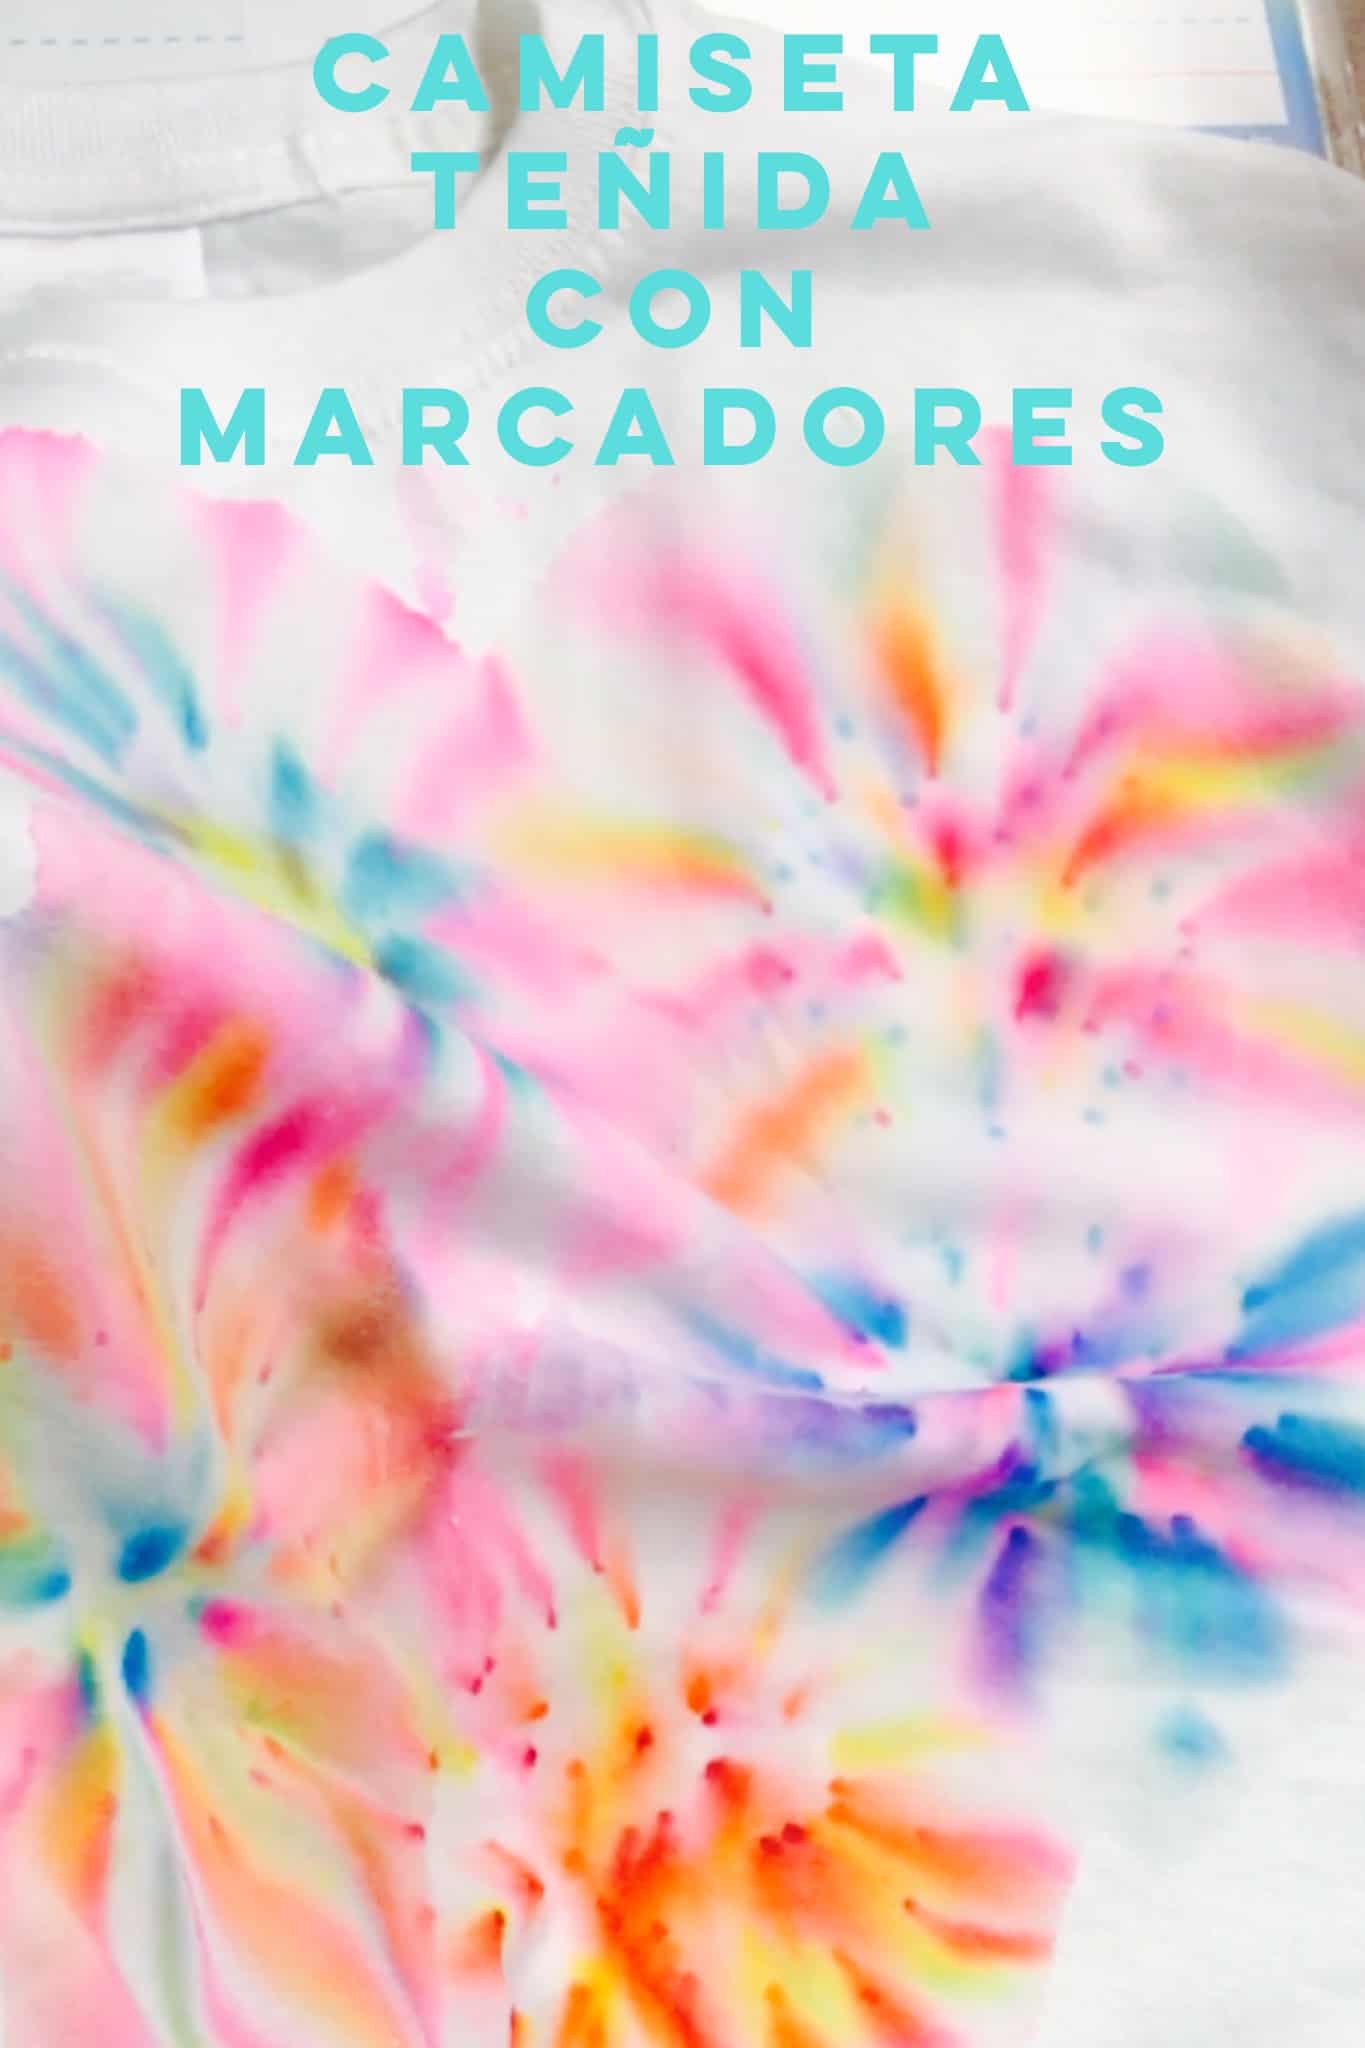 Si buscas una actividad colorida, divertida y fácil de hacer, te encantarán estas camisetas tie-dye que puedes teñir con plumones o marcadores y alcohol.